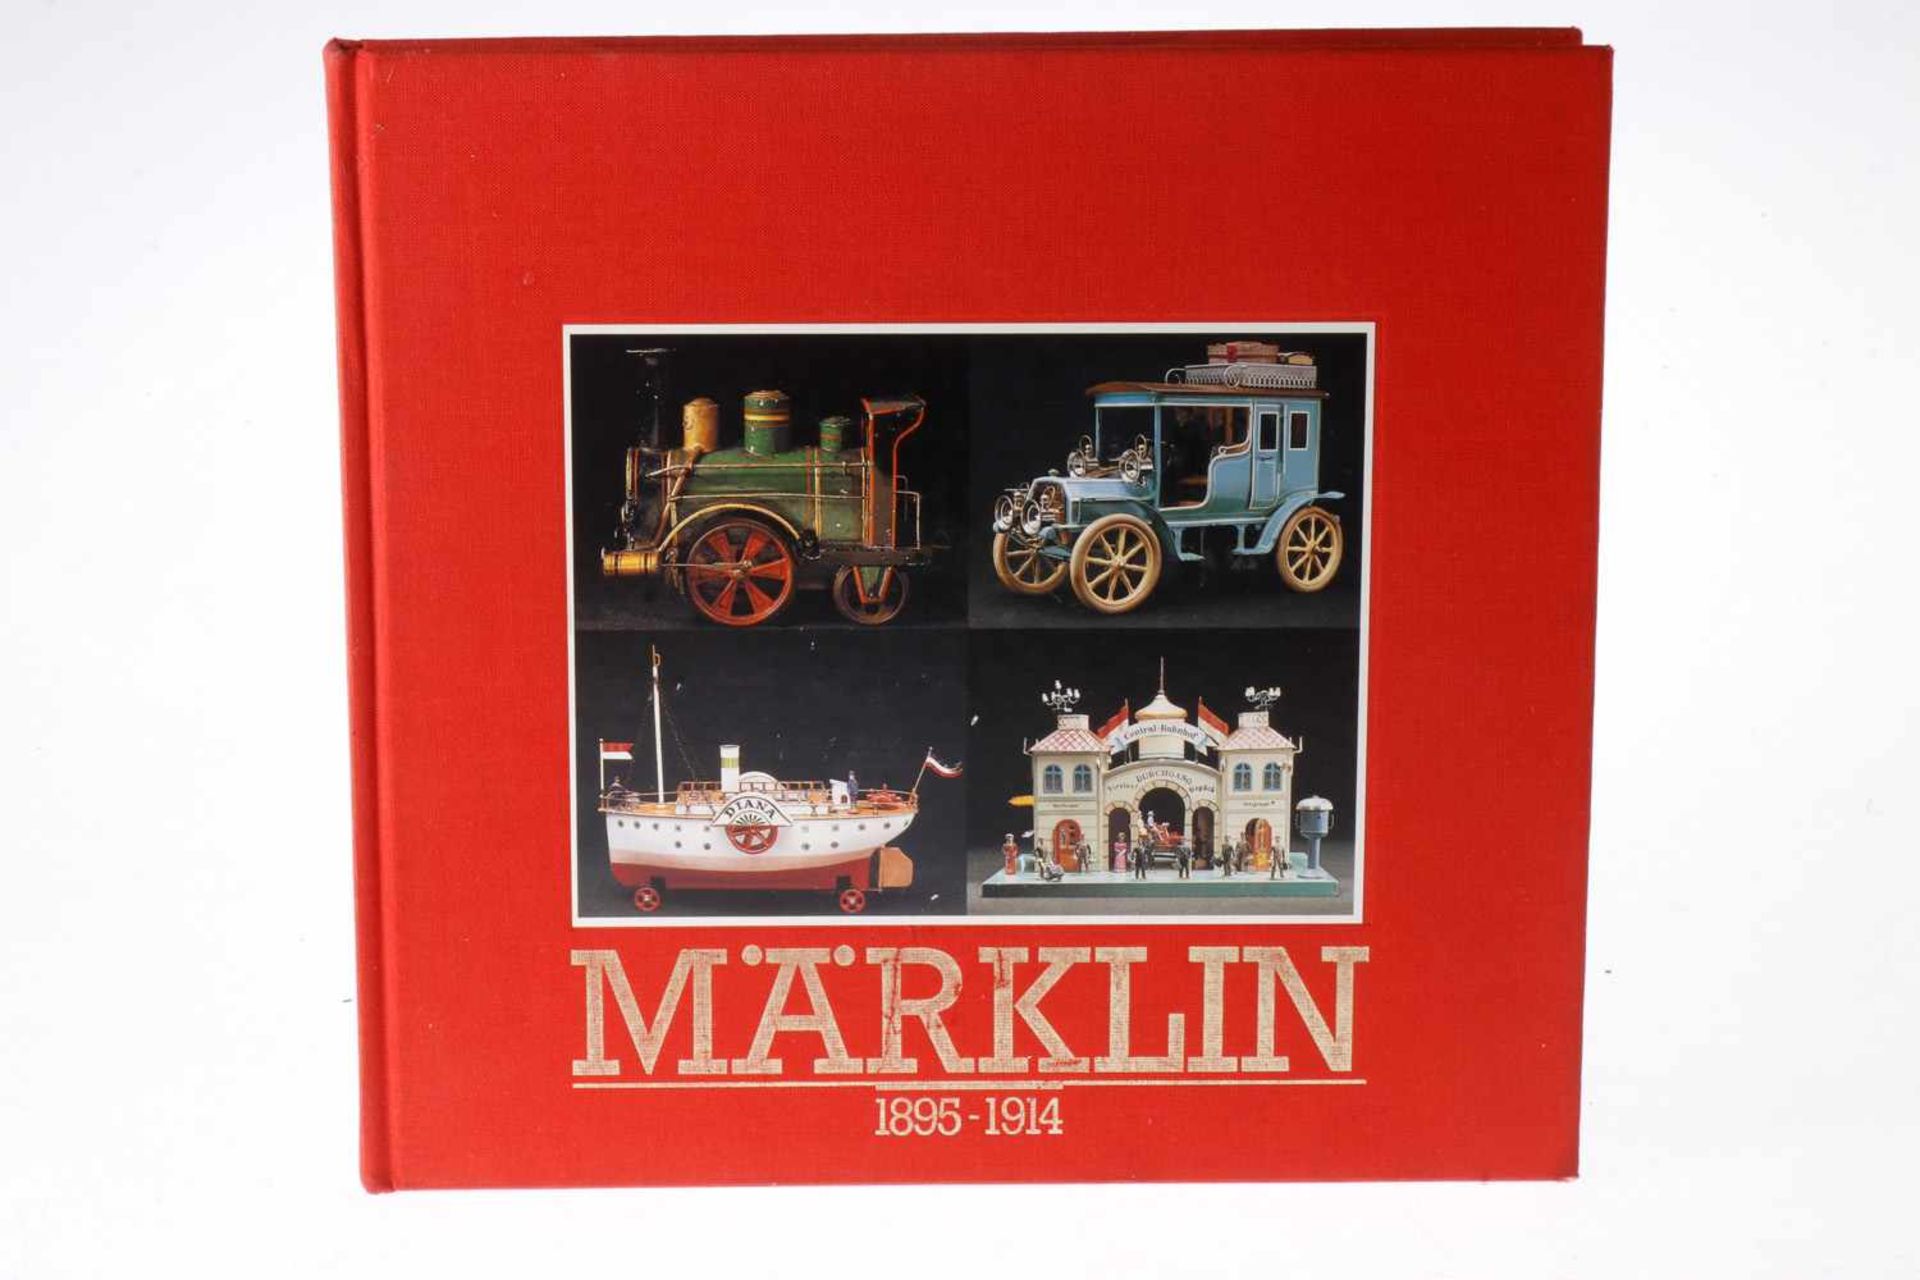 Märklin-Buch "1895-1914", gebunden, Alterungsspuren